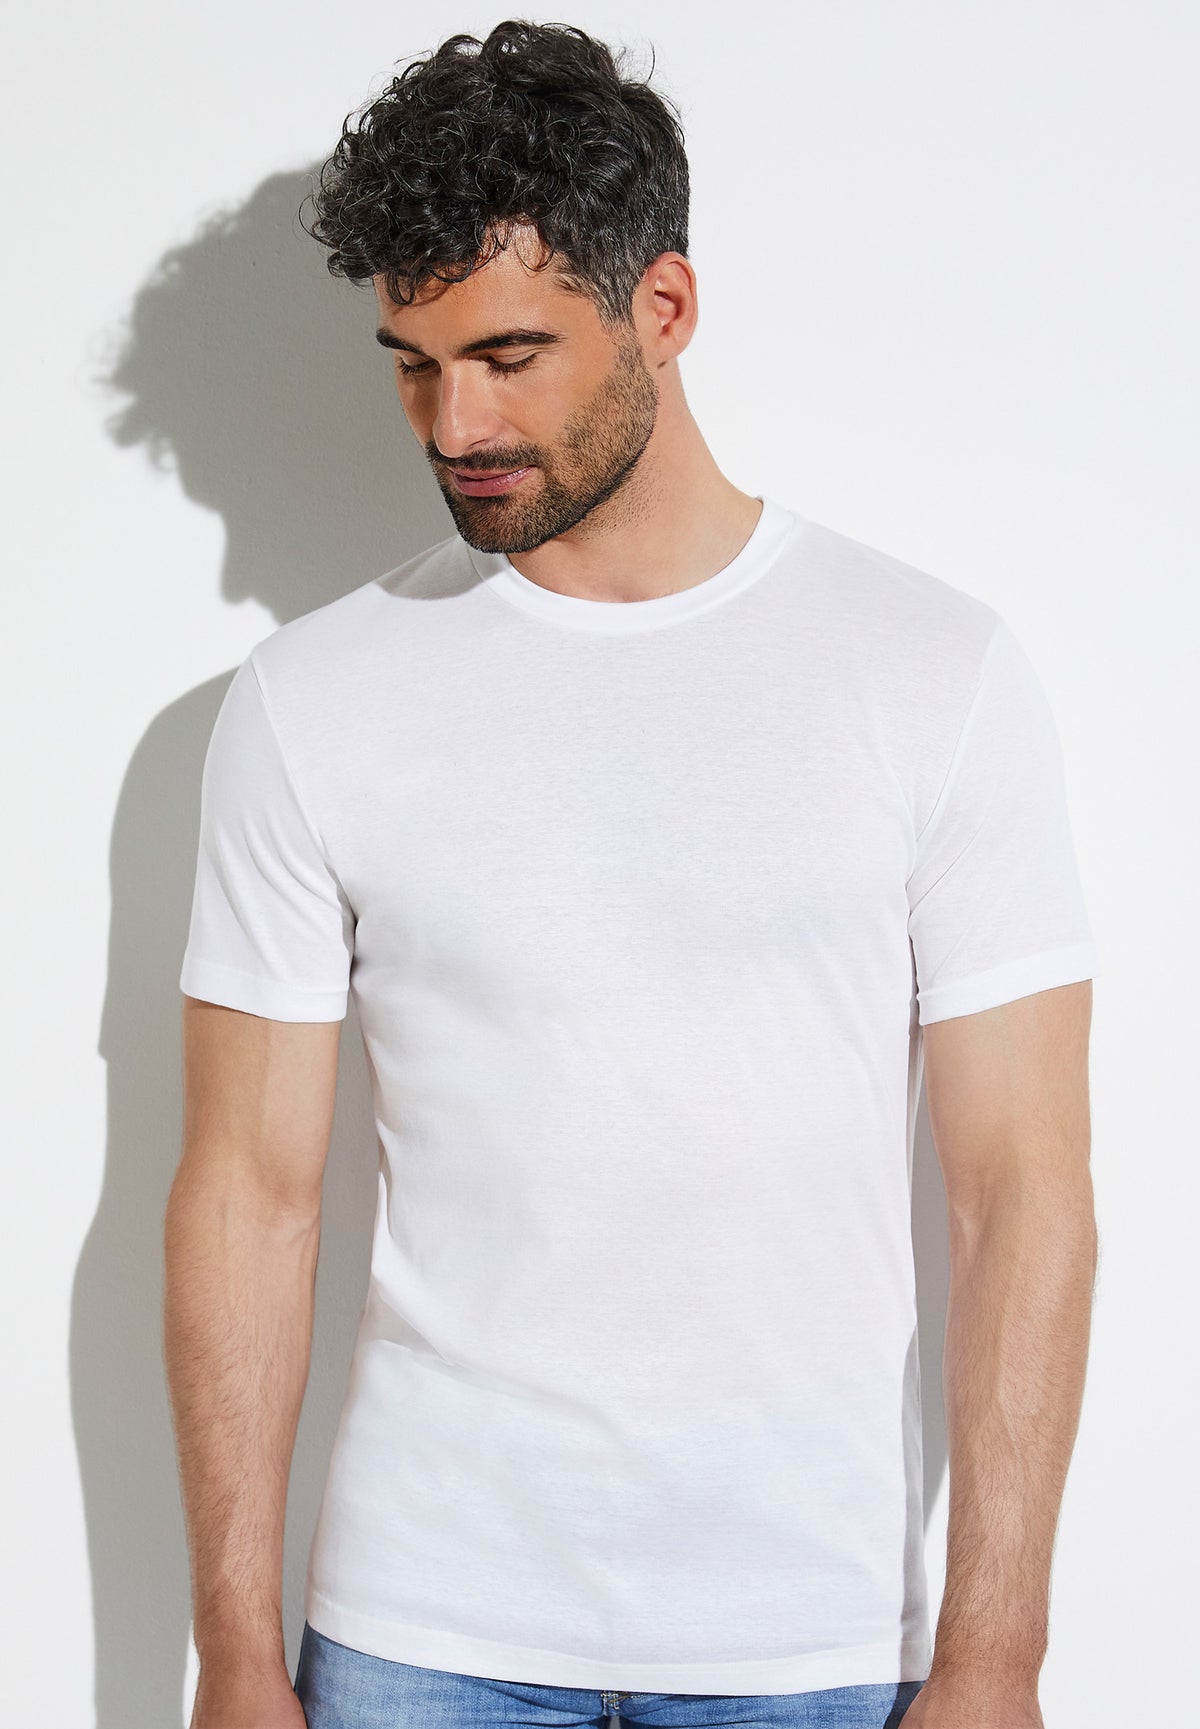 Business Class | T-Shirt Short Sleeve - white